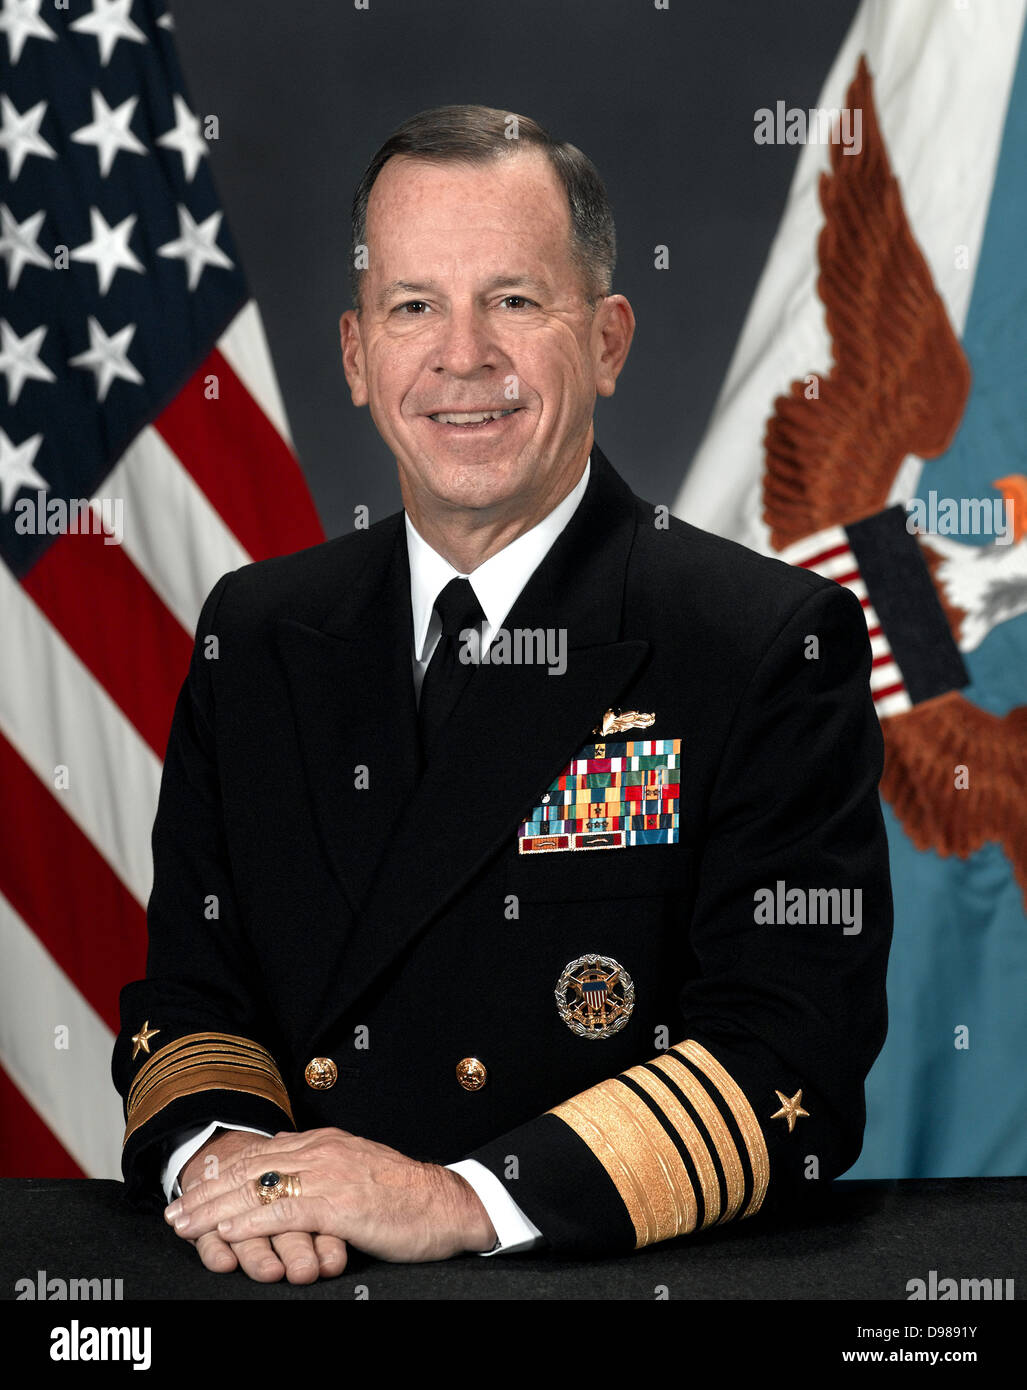 Admiral Michael Glenn 'Mike' Mullen, USN (geboren am 4. Oktober 1946) ist der 17. und derzeitigen Vorsitzenden des Generalstabs (CJCS). Mullen zuvor als 28 Chef der Marine der Marineoperationen ab 22. Juli 2005 bis 29. September 2007. Seine anderen 4-Sterne Aufgaben beinhalten, der Commander, U.S. Naval Forces Europe und Kommandant, Allied Joint Force Command Naples von Oktober 2004 bis Mai 2005, als die 32. Der Stellvertretende Leiter der Marineoperationen von August 2003 bis August 2004. Mullen hat seine aktuelle Belegung am 1. Oktober 2007. Stockfoto